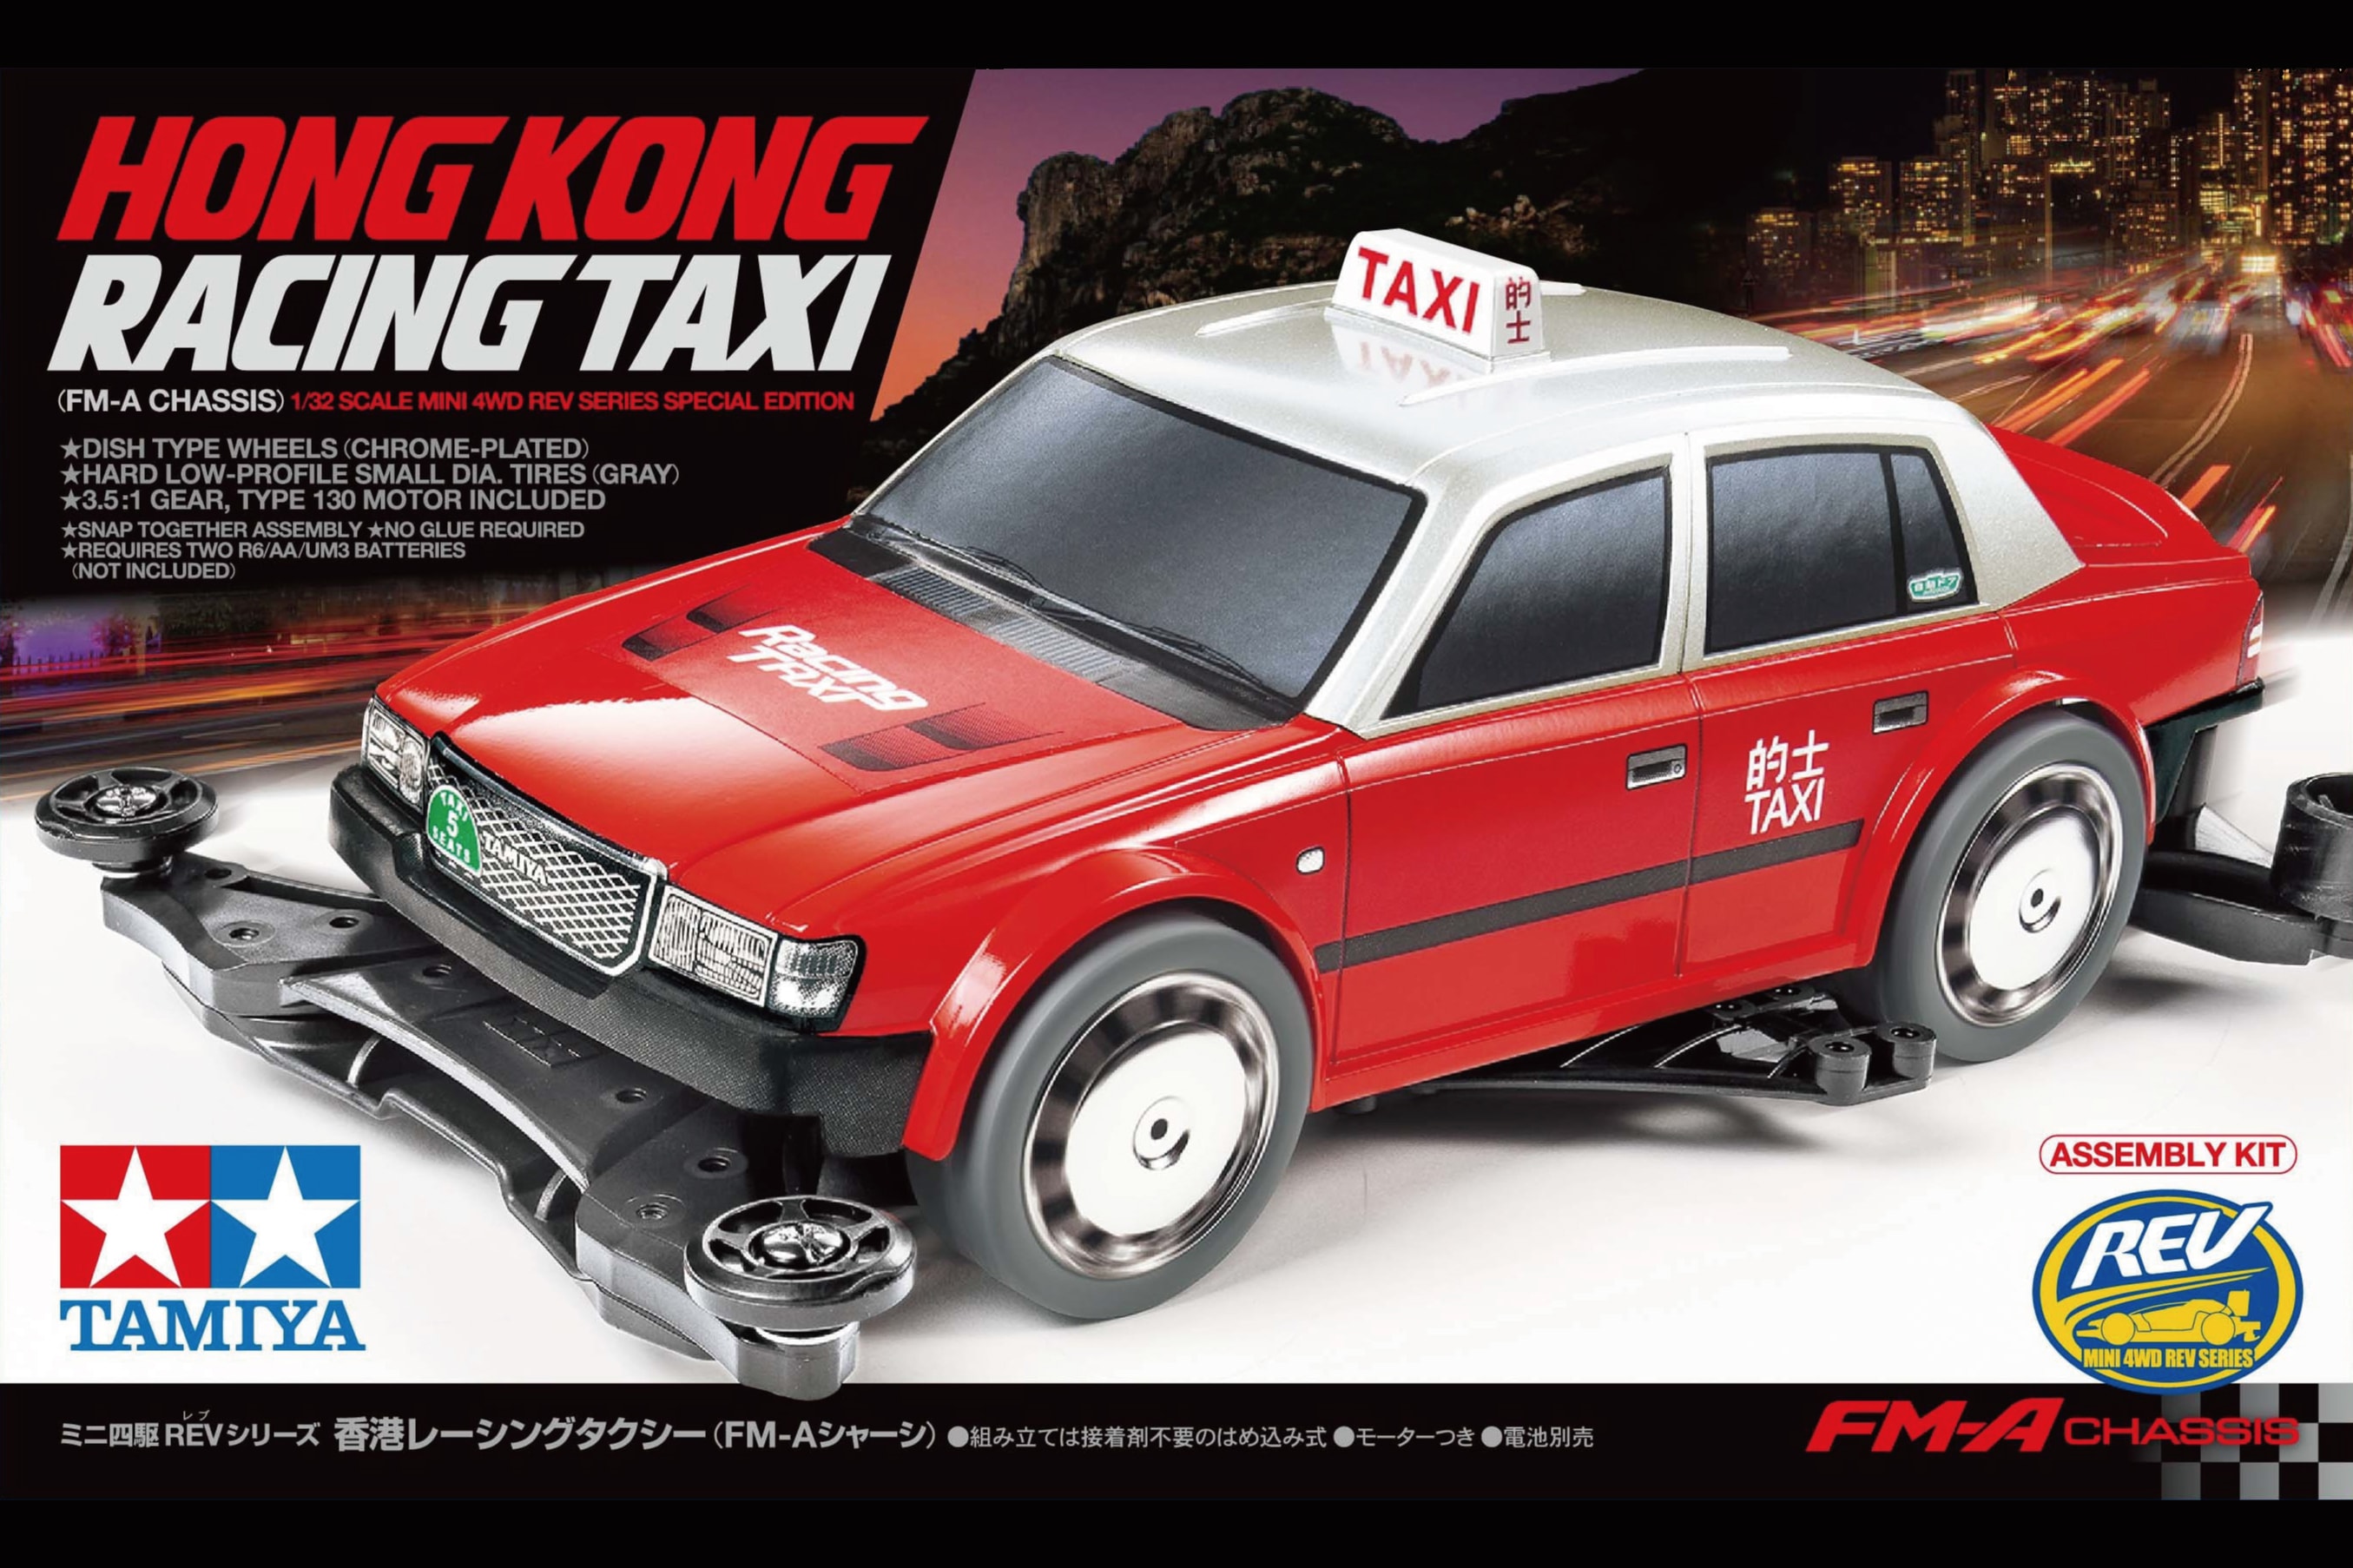 TAMIYA 田宮模型破天荒推出香港「的士」四驅車模型